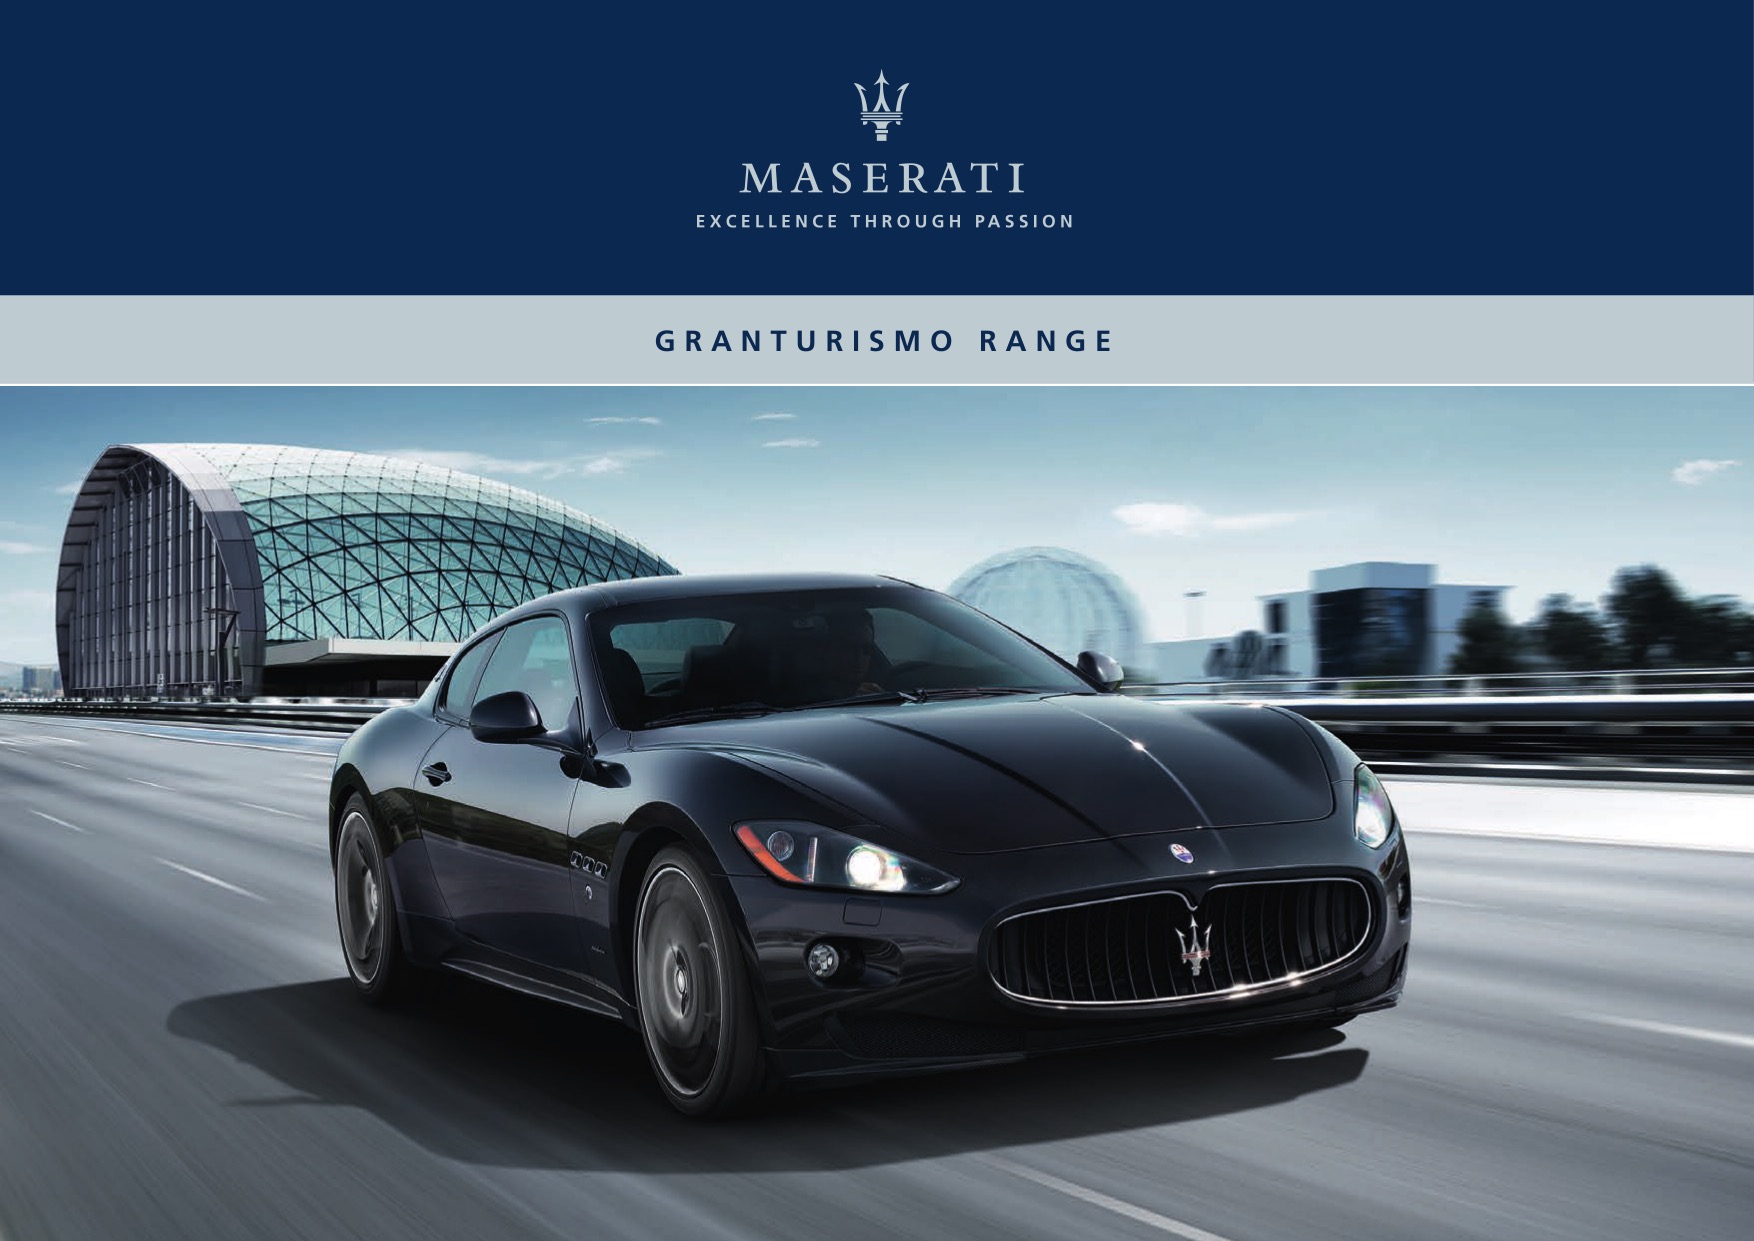 2012 Maserati Granturismo Brochure